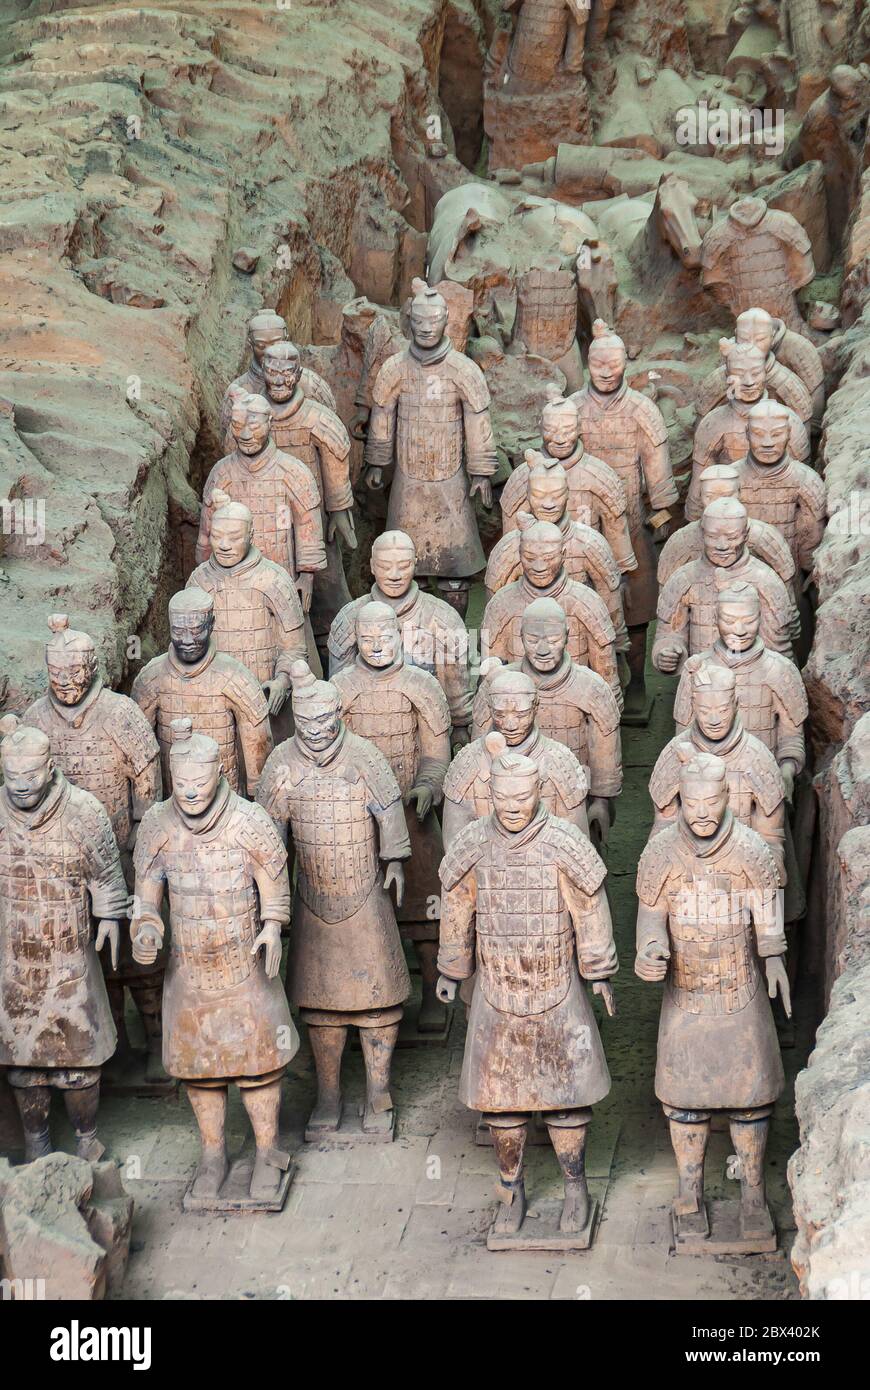 Xian, Cina - 1 maggio 2010: Sito di scavo dell'Esercito di terracotta. Gruppo di statue di soldati in trincea grigio-beige. Foto Stock